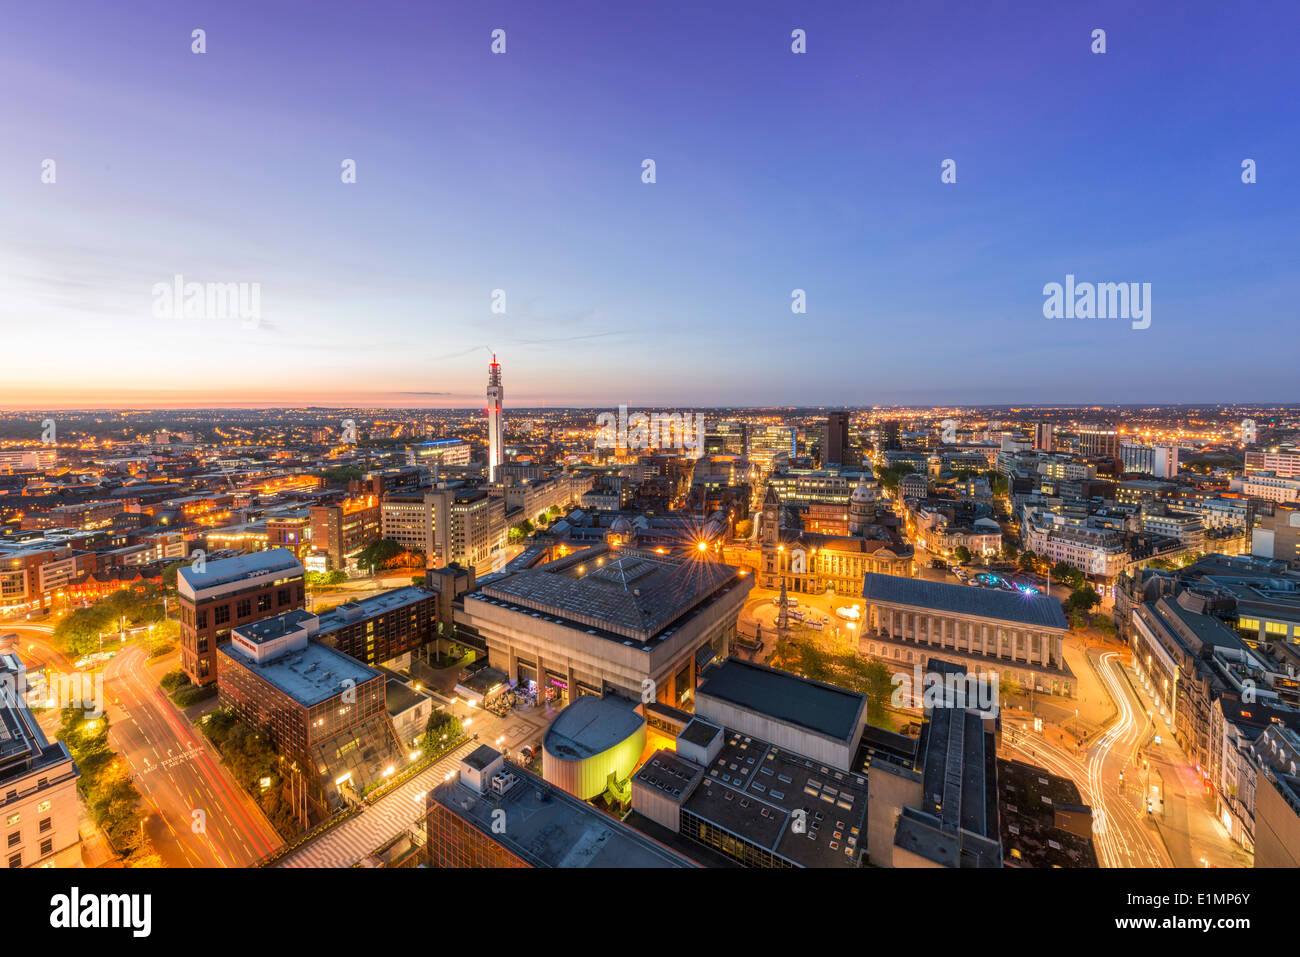 Eine Nacht-Blick auf das Stadtzentrum von Birmingham in der Nacht. Stockfoto